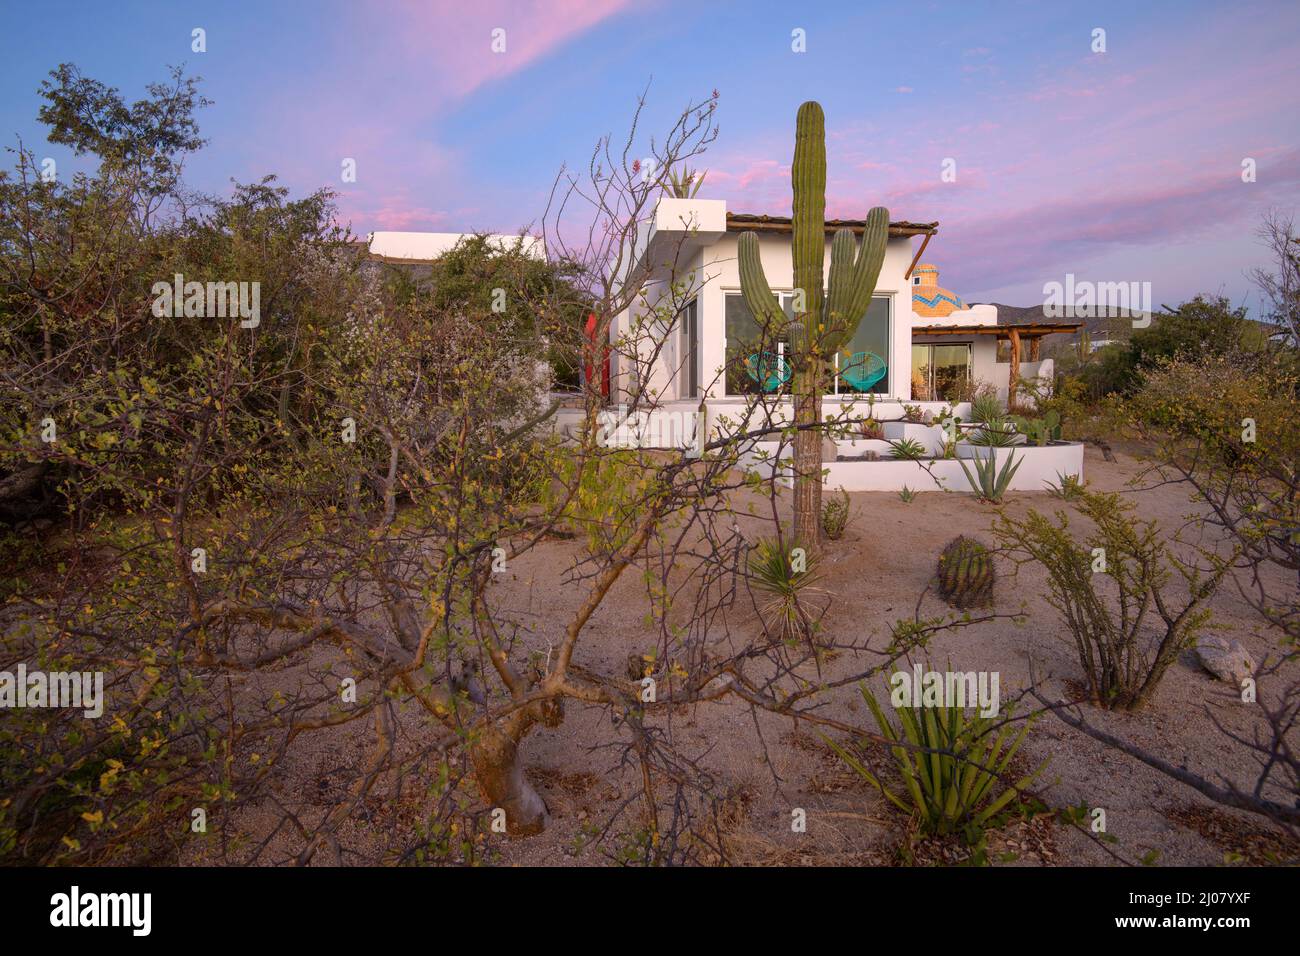 Mexico, Baja California Sur, El Sargento, Rancho Sur desert house Stock Photo